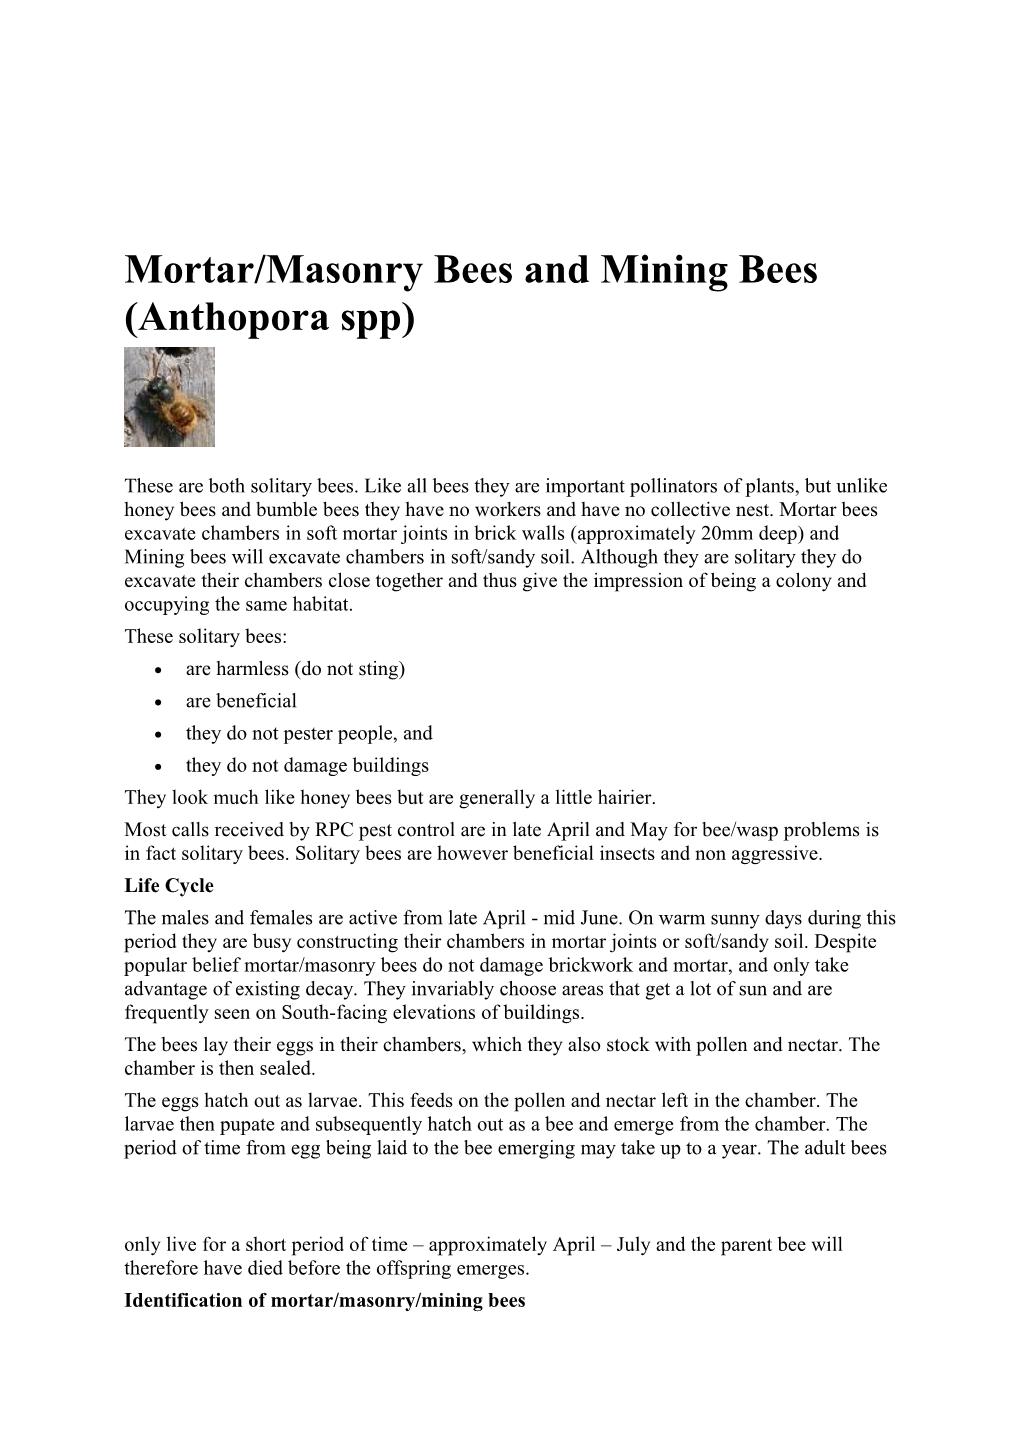 Mortar/Masonry Bees and Mining Bees (Anthopora Spp)